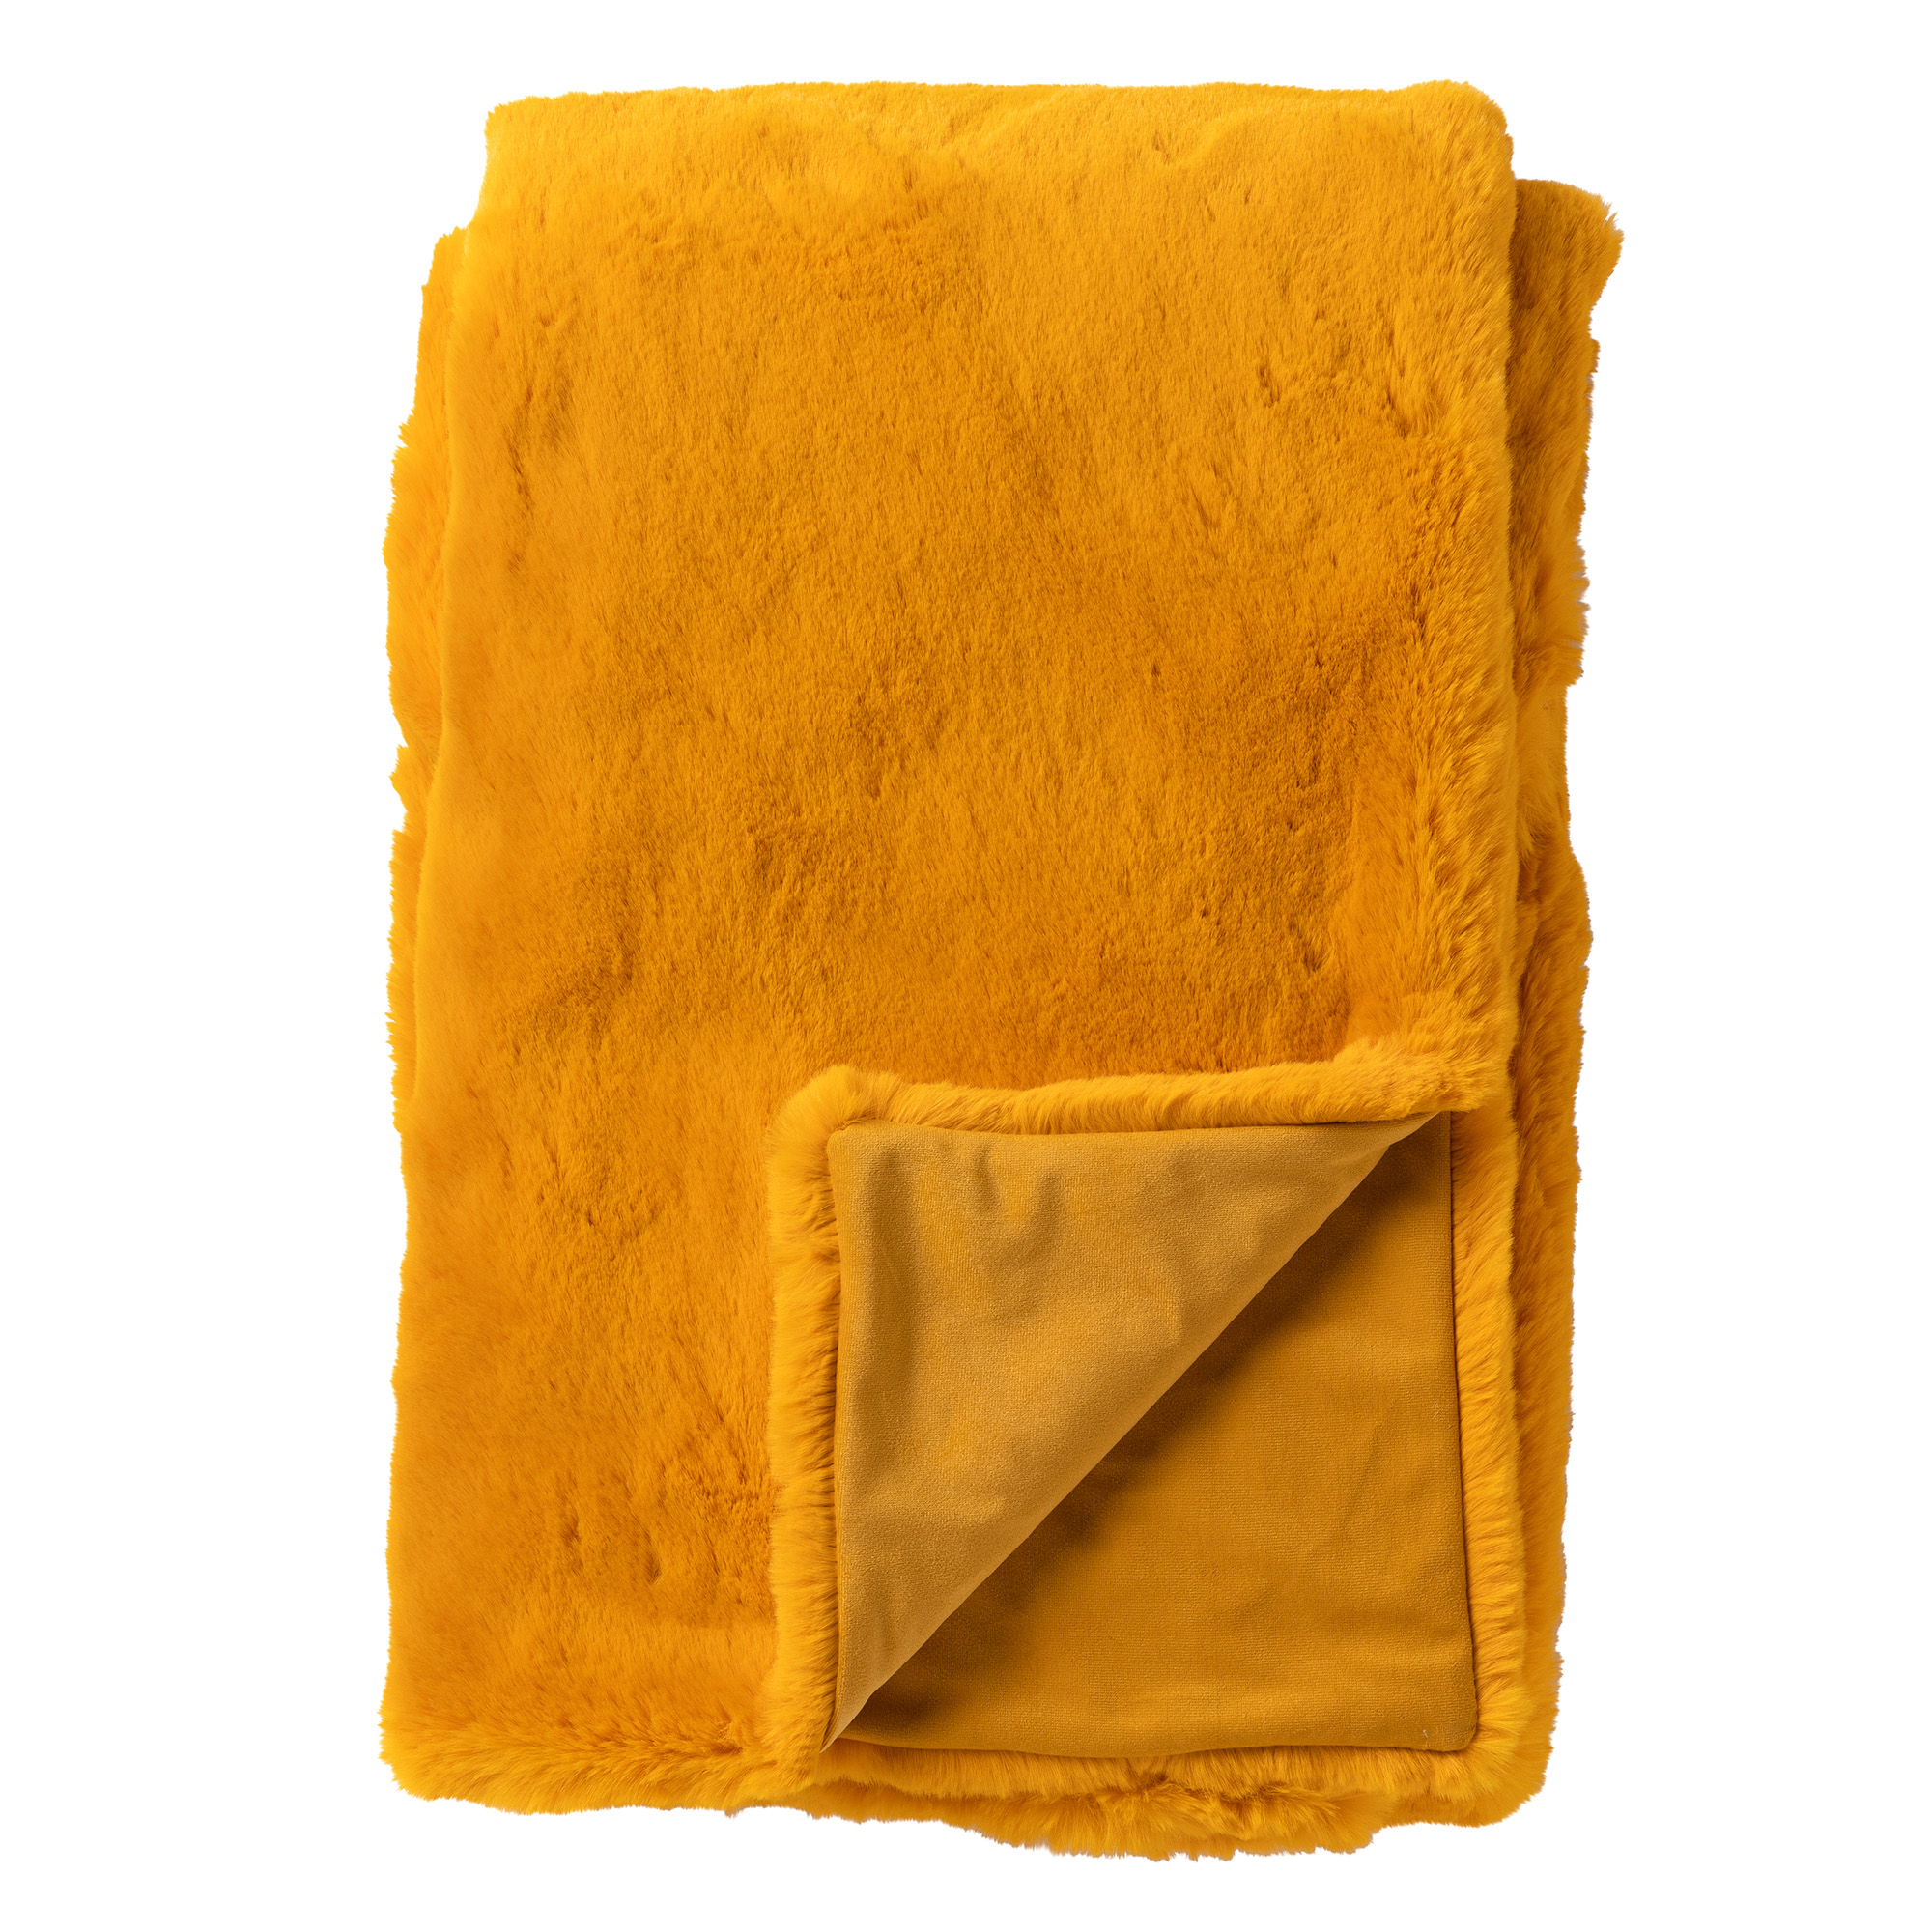 ZINZI - Plaid 140x180 cm - bontlook - effen kleur - Golden Glow - geel